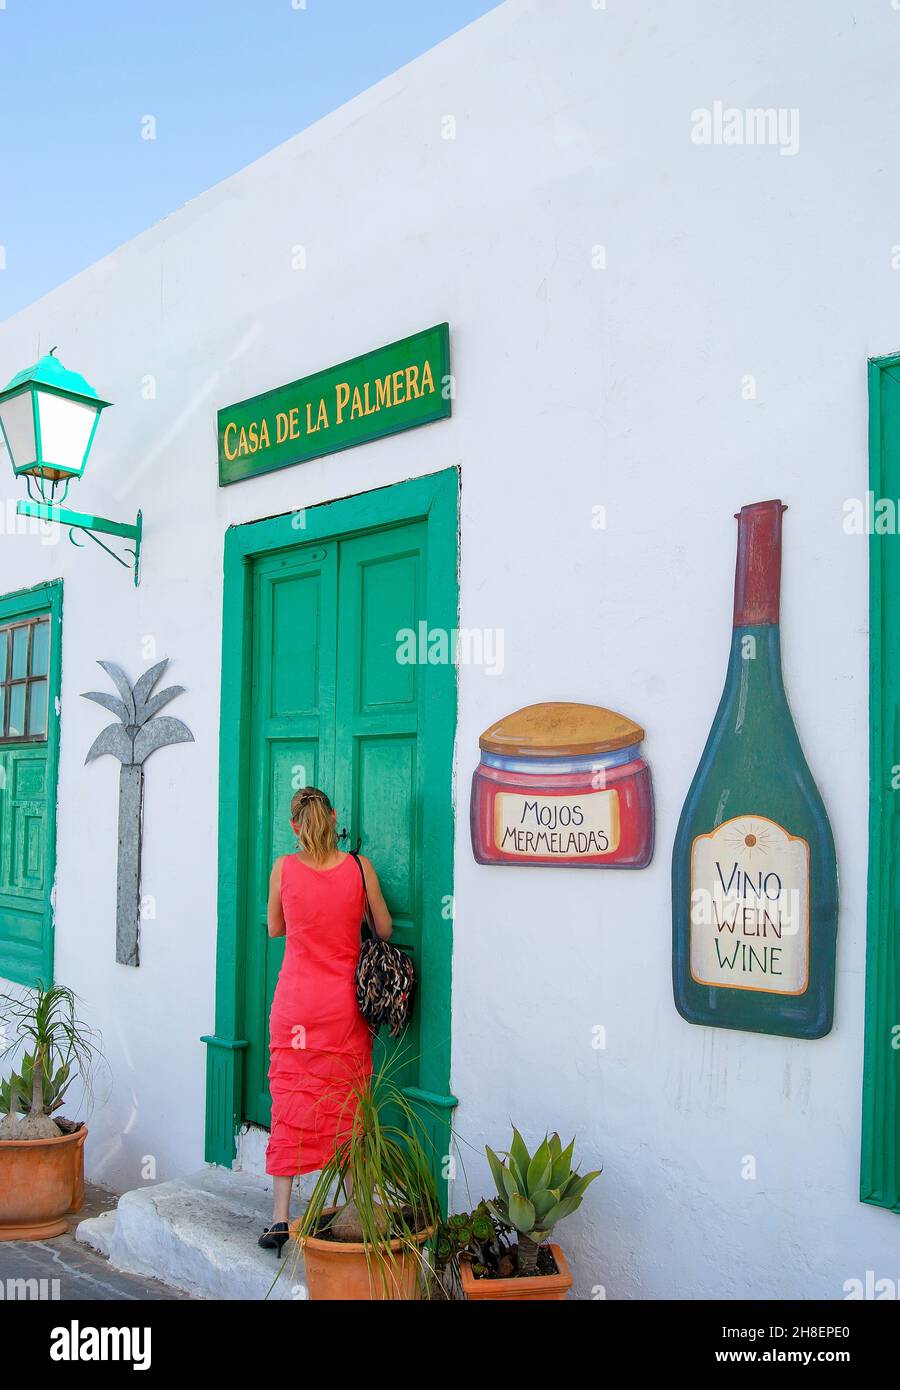 Casa de la Palmeria Spanish food shop, Teguise, Lanzarote, Canary Islands, Spain Stock Photo